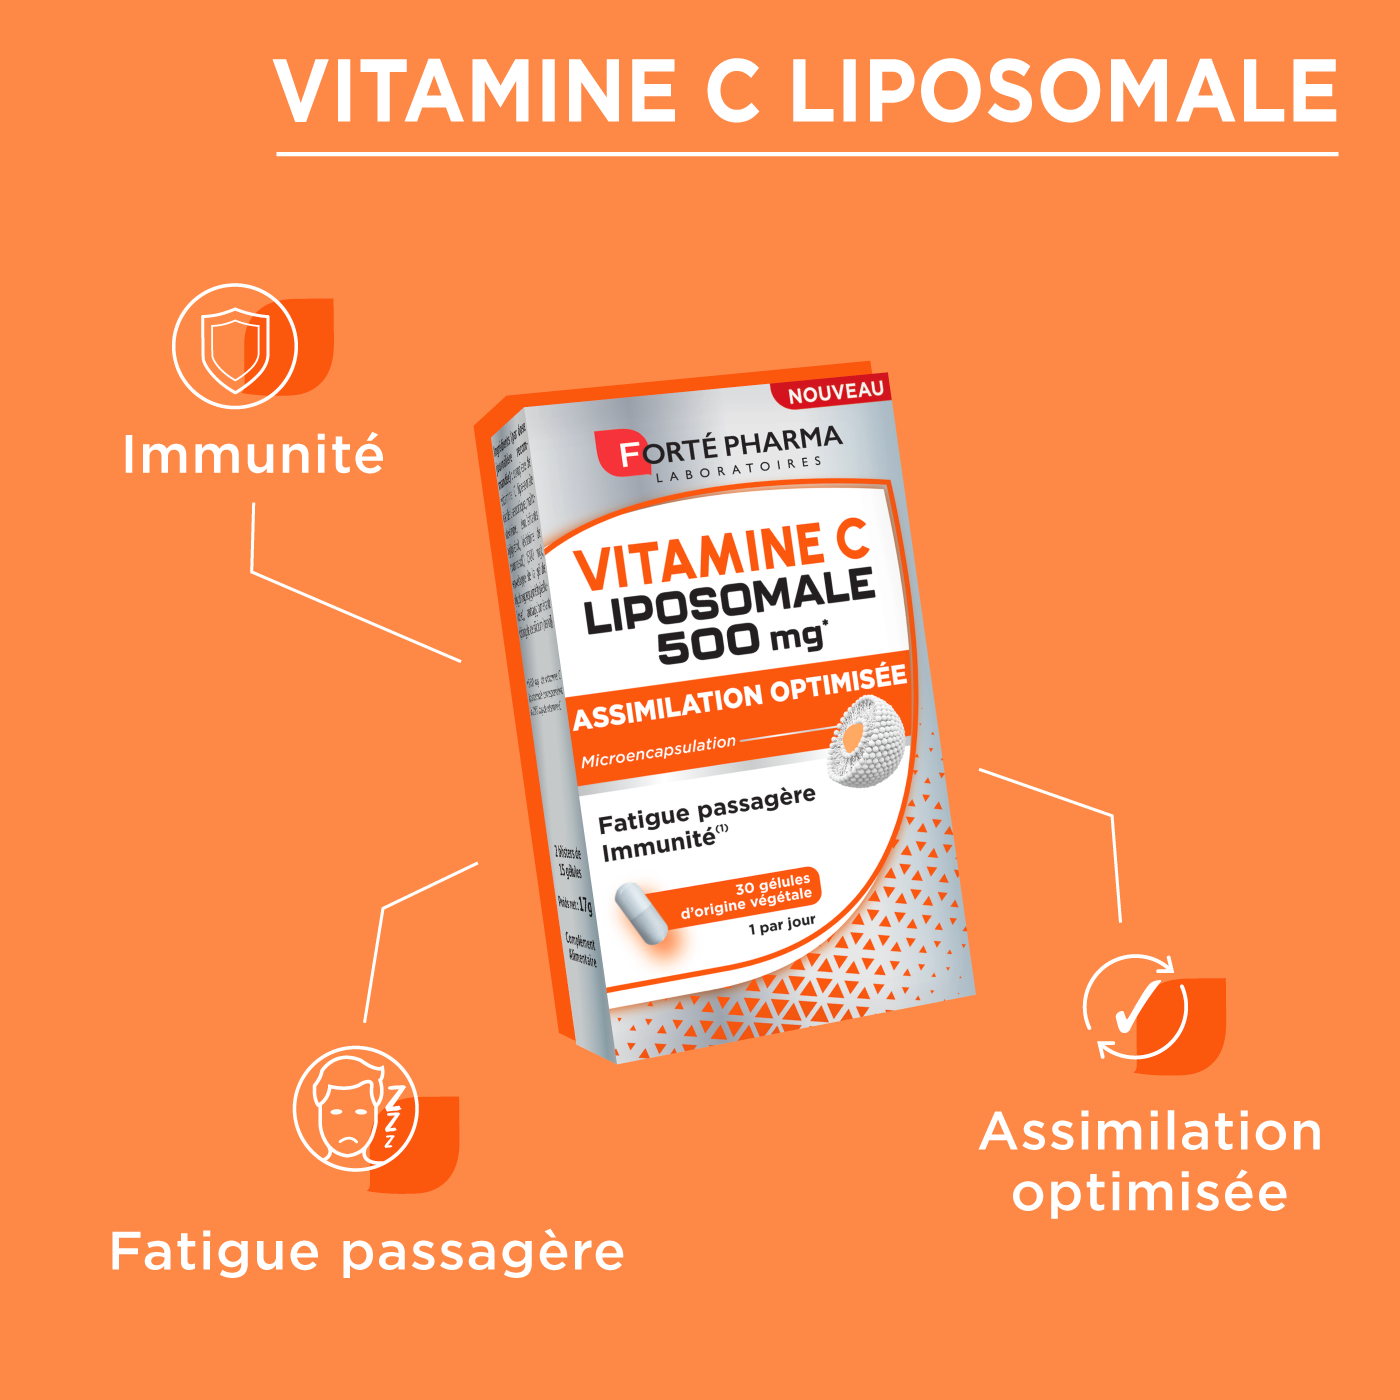 Vitamine C Liposomale attributs fatigue passagère